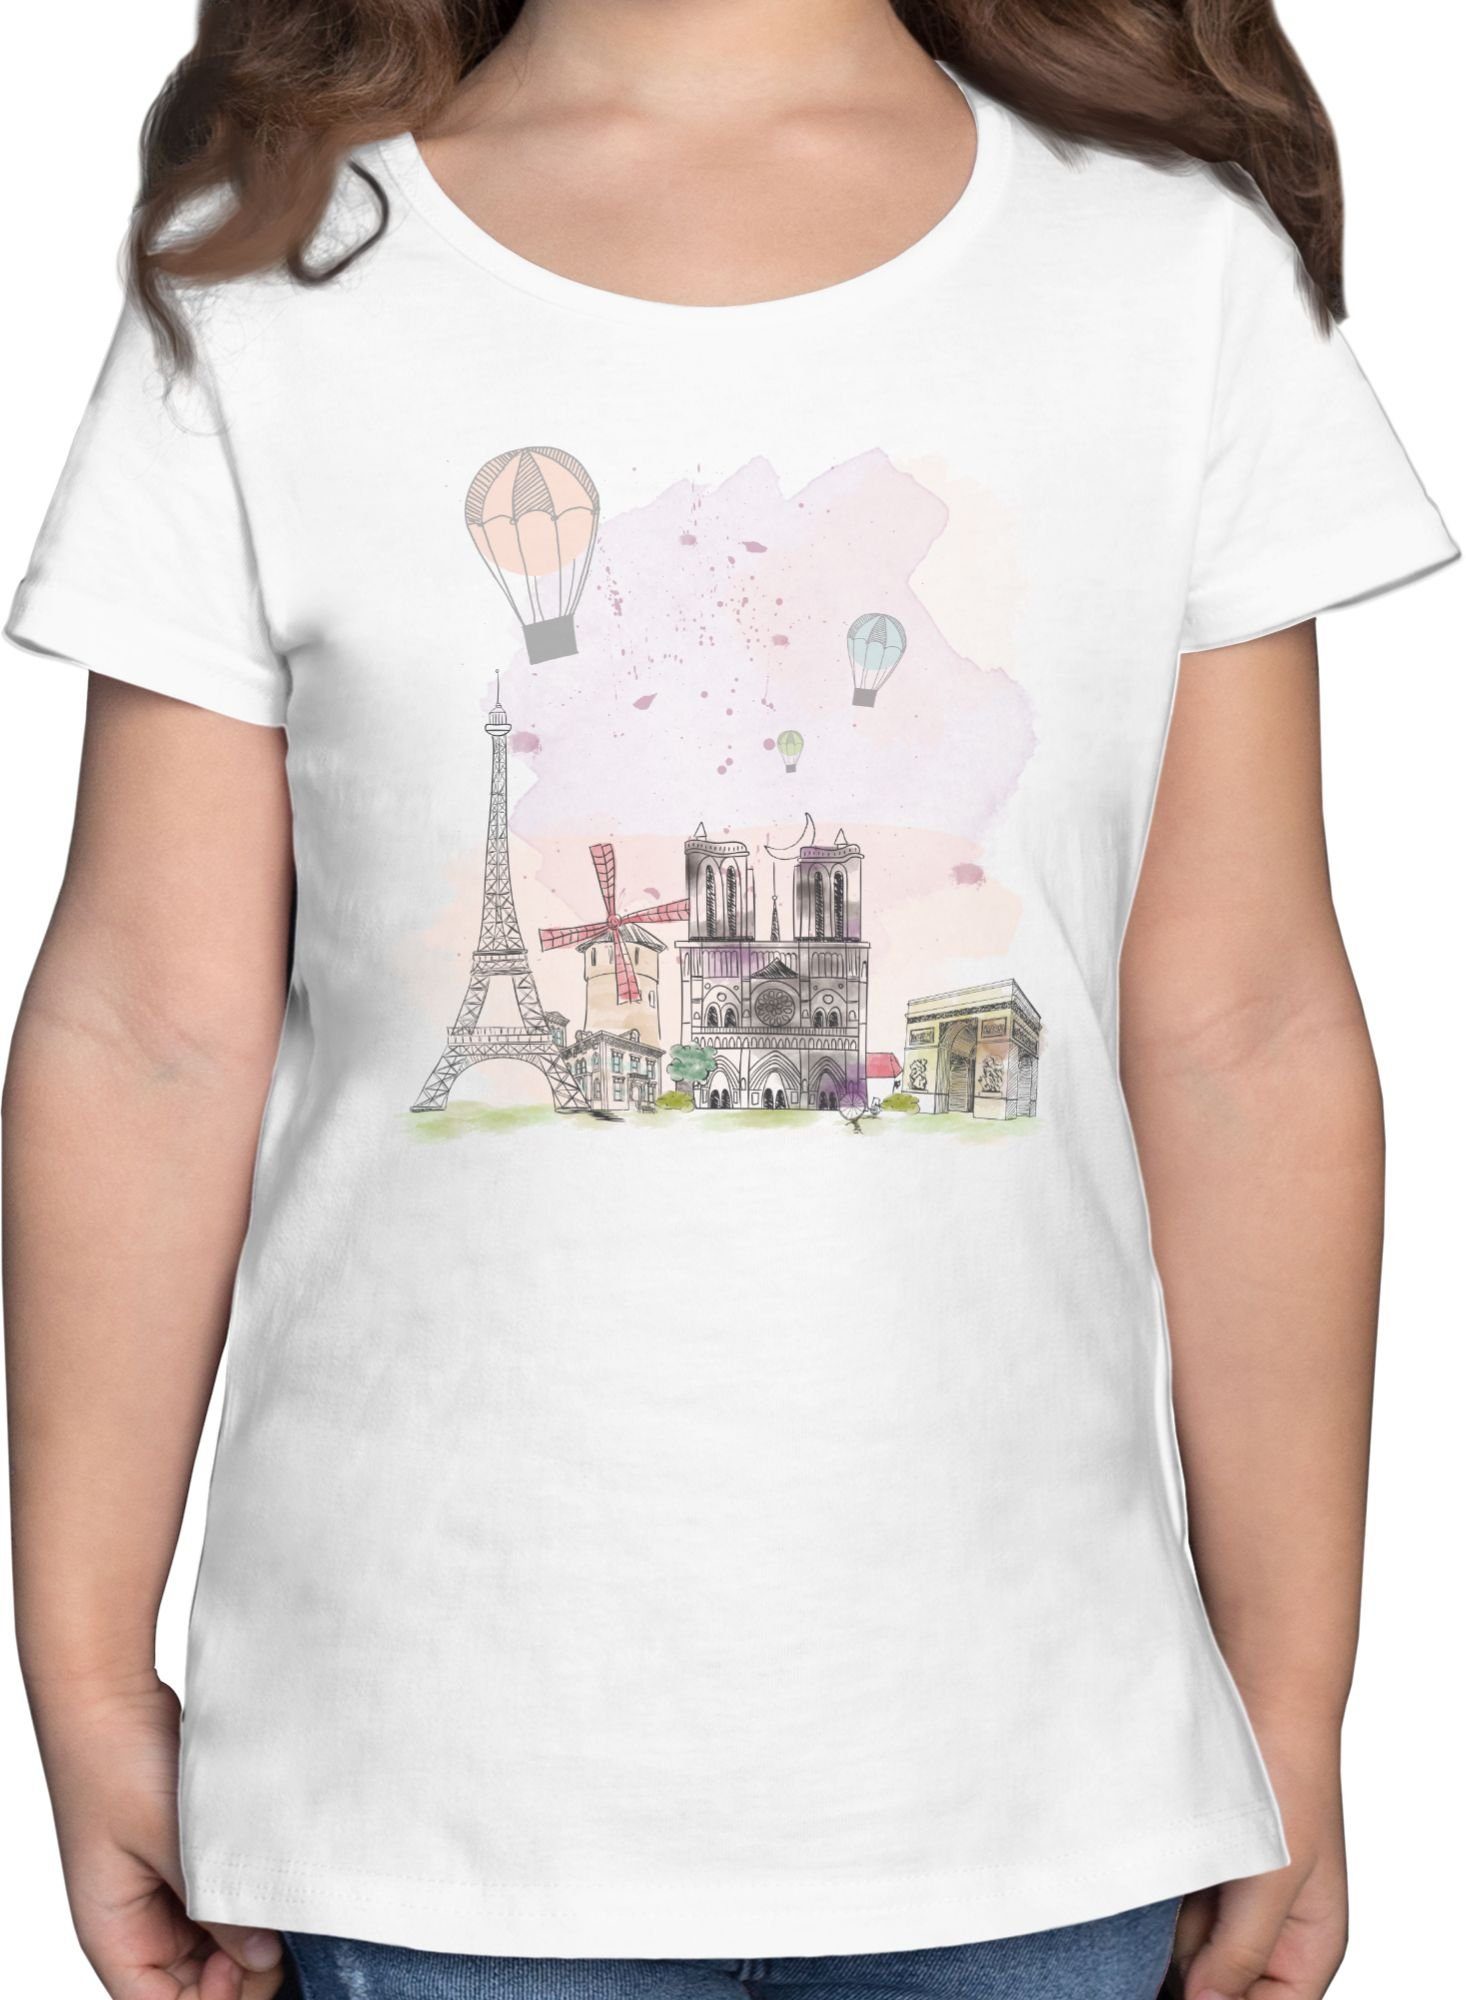 Shirtracer T-Shirt Paris Eiffelturm Notre-Dame - Kinder Länder Wappen -  Mädchen Kinder T-Shirt weißes tshirt kinder - weiße tshirts mädchen - paris t  shirt